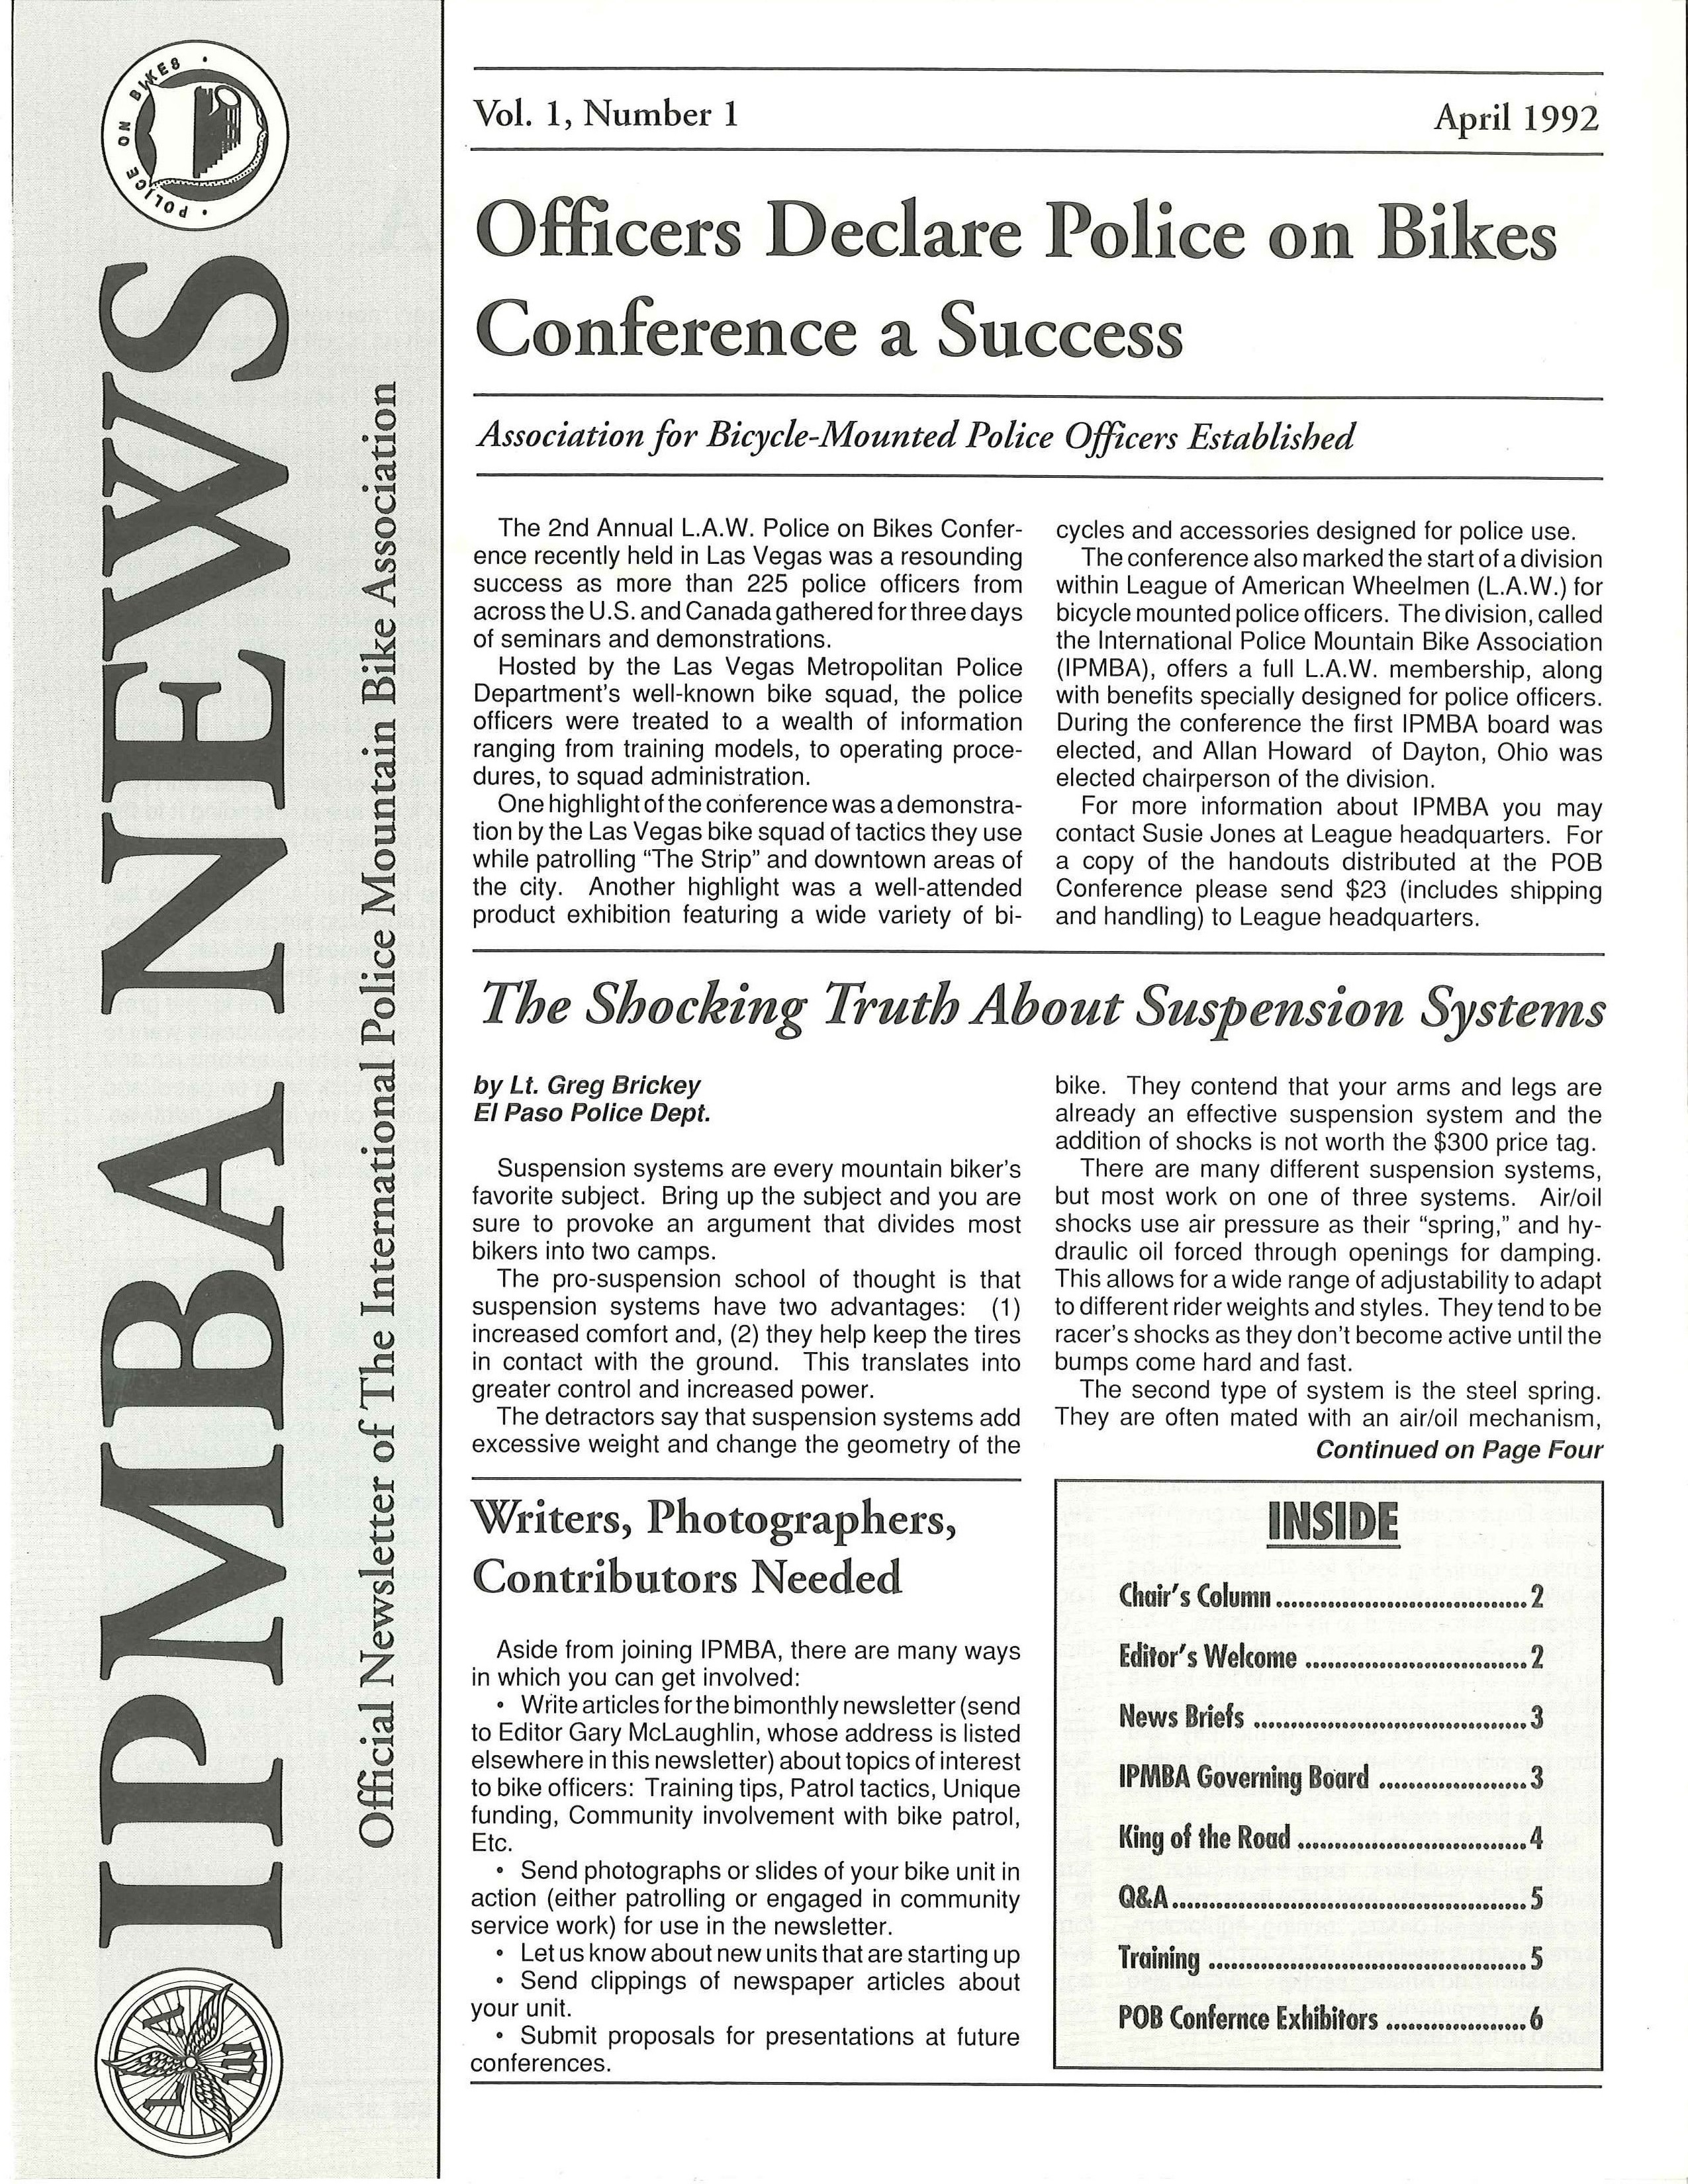 IPMBA News Vol. 1 No. 1 April 1992